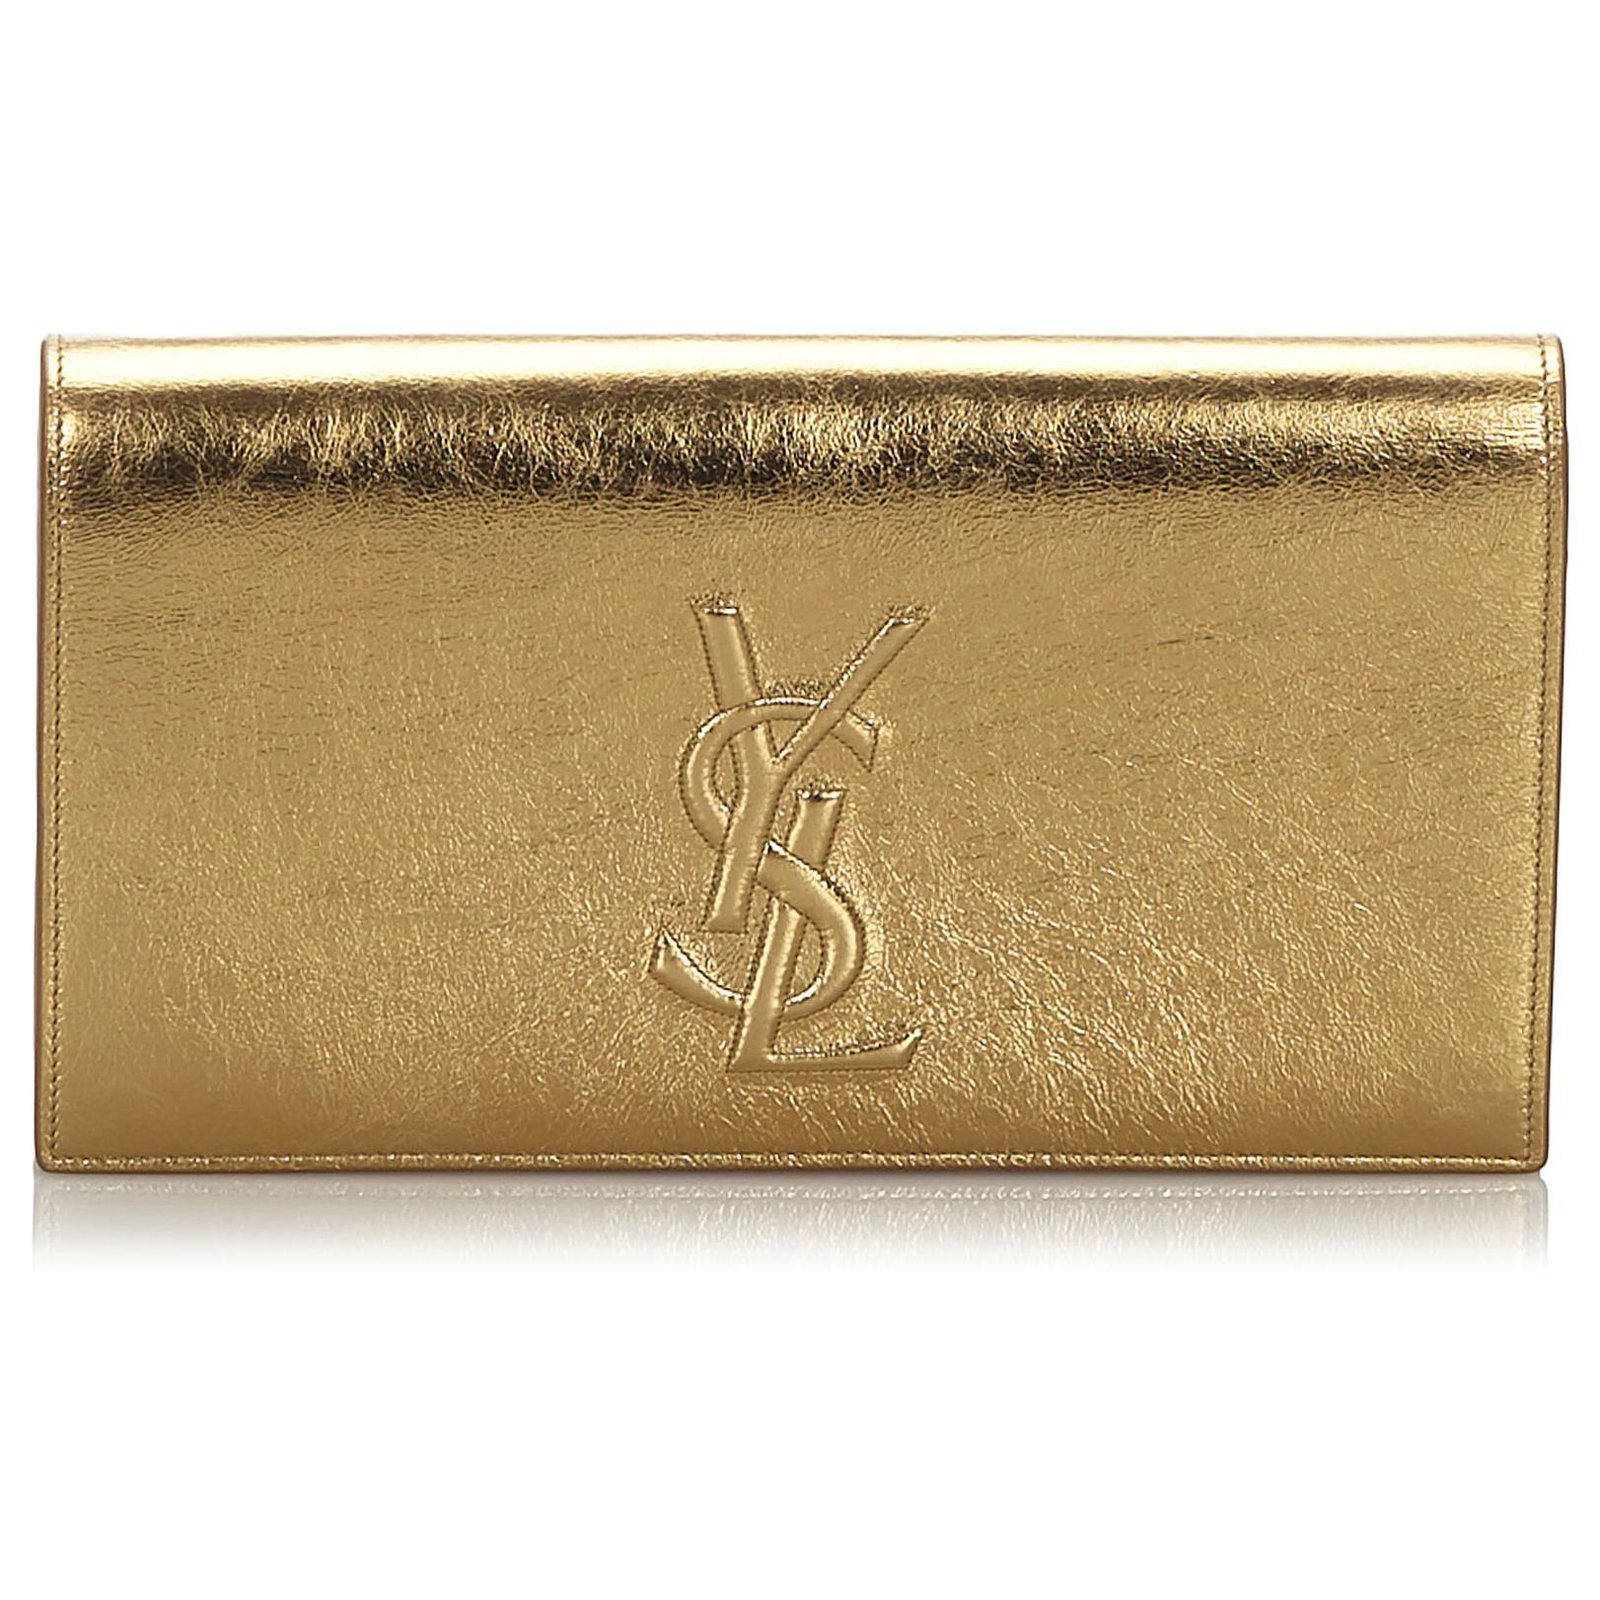 Yves Saint Laurent YSL Gold Metallic Leather Belle de Jour Clutch Bag